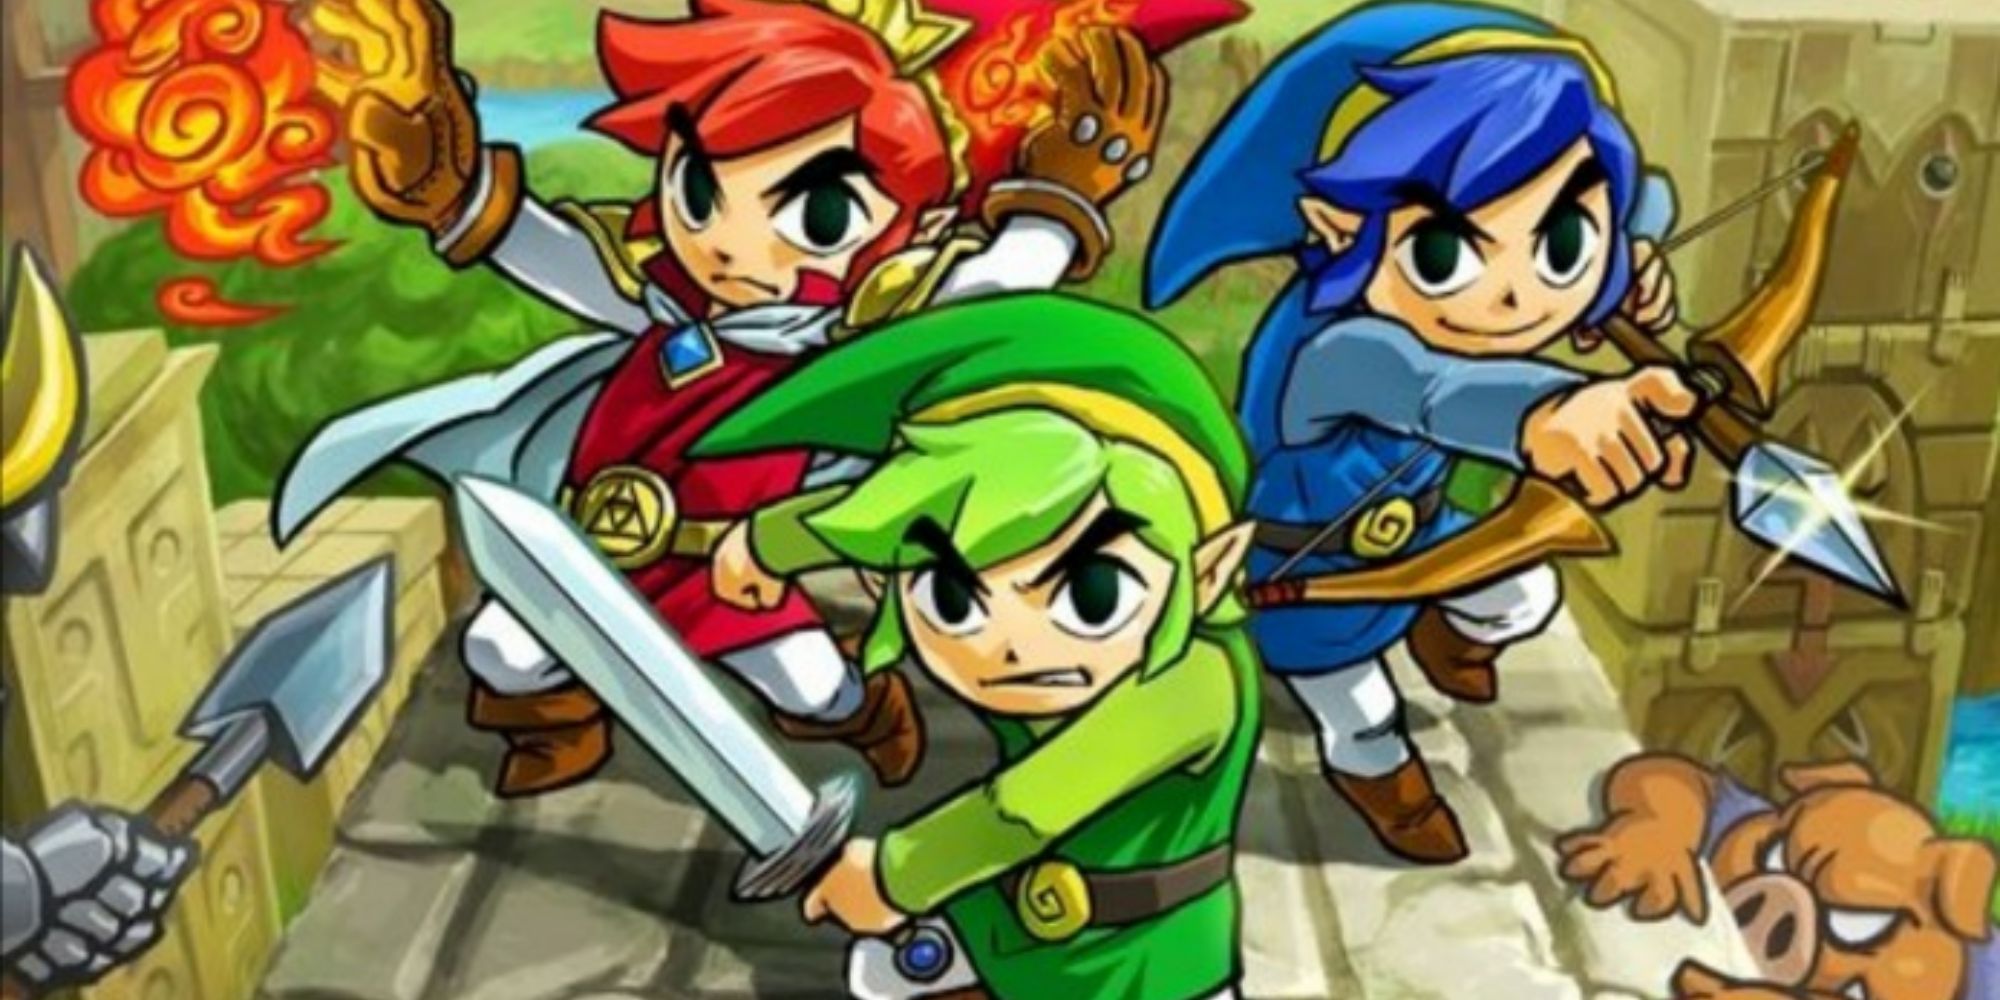 Legend of Zelda - Triforce Heroes